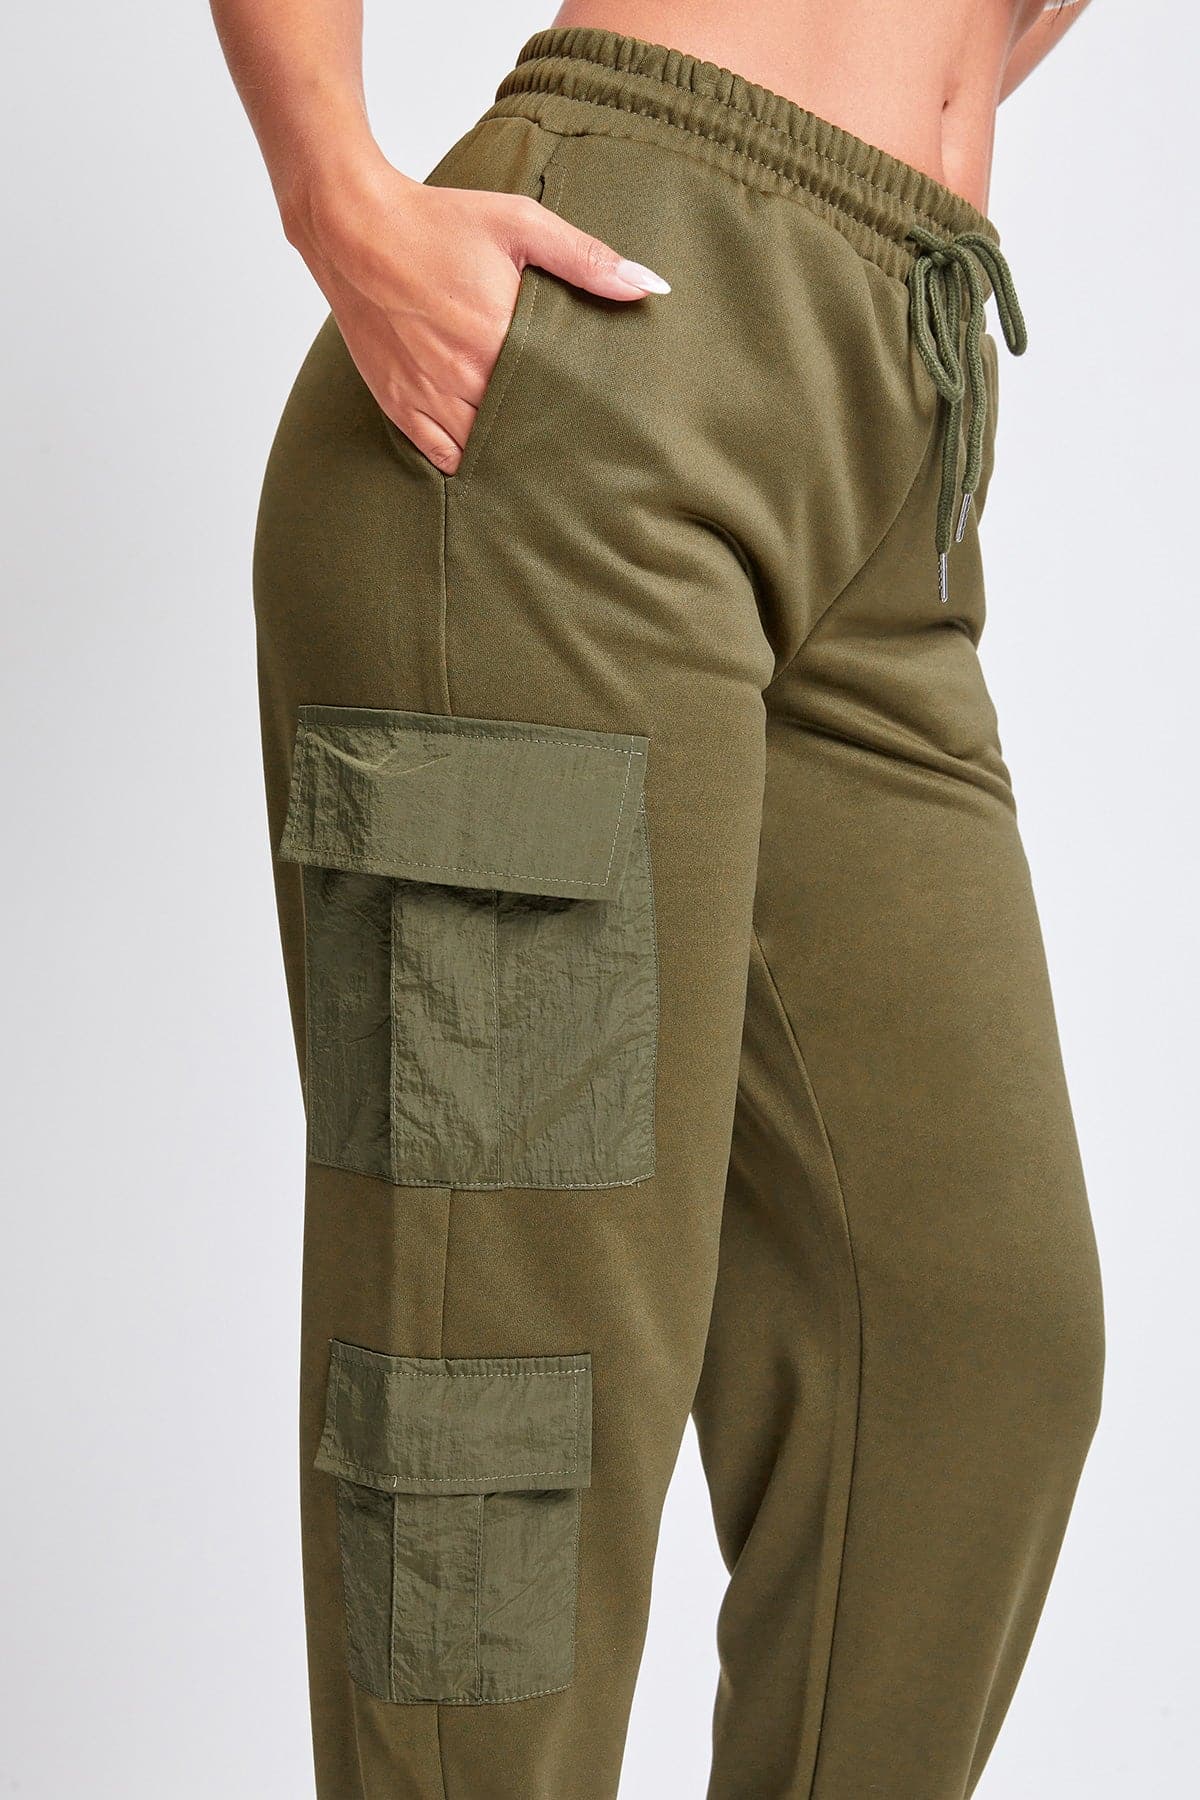 Women's  Joggers with Nylon Pockets